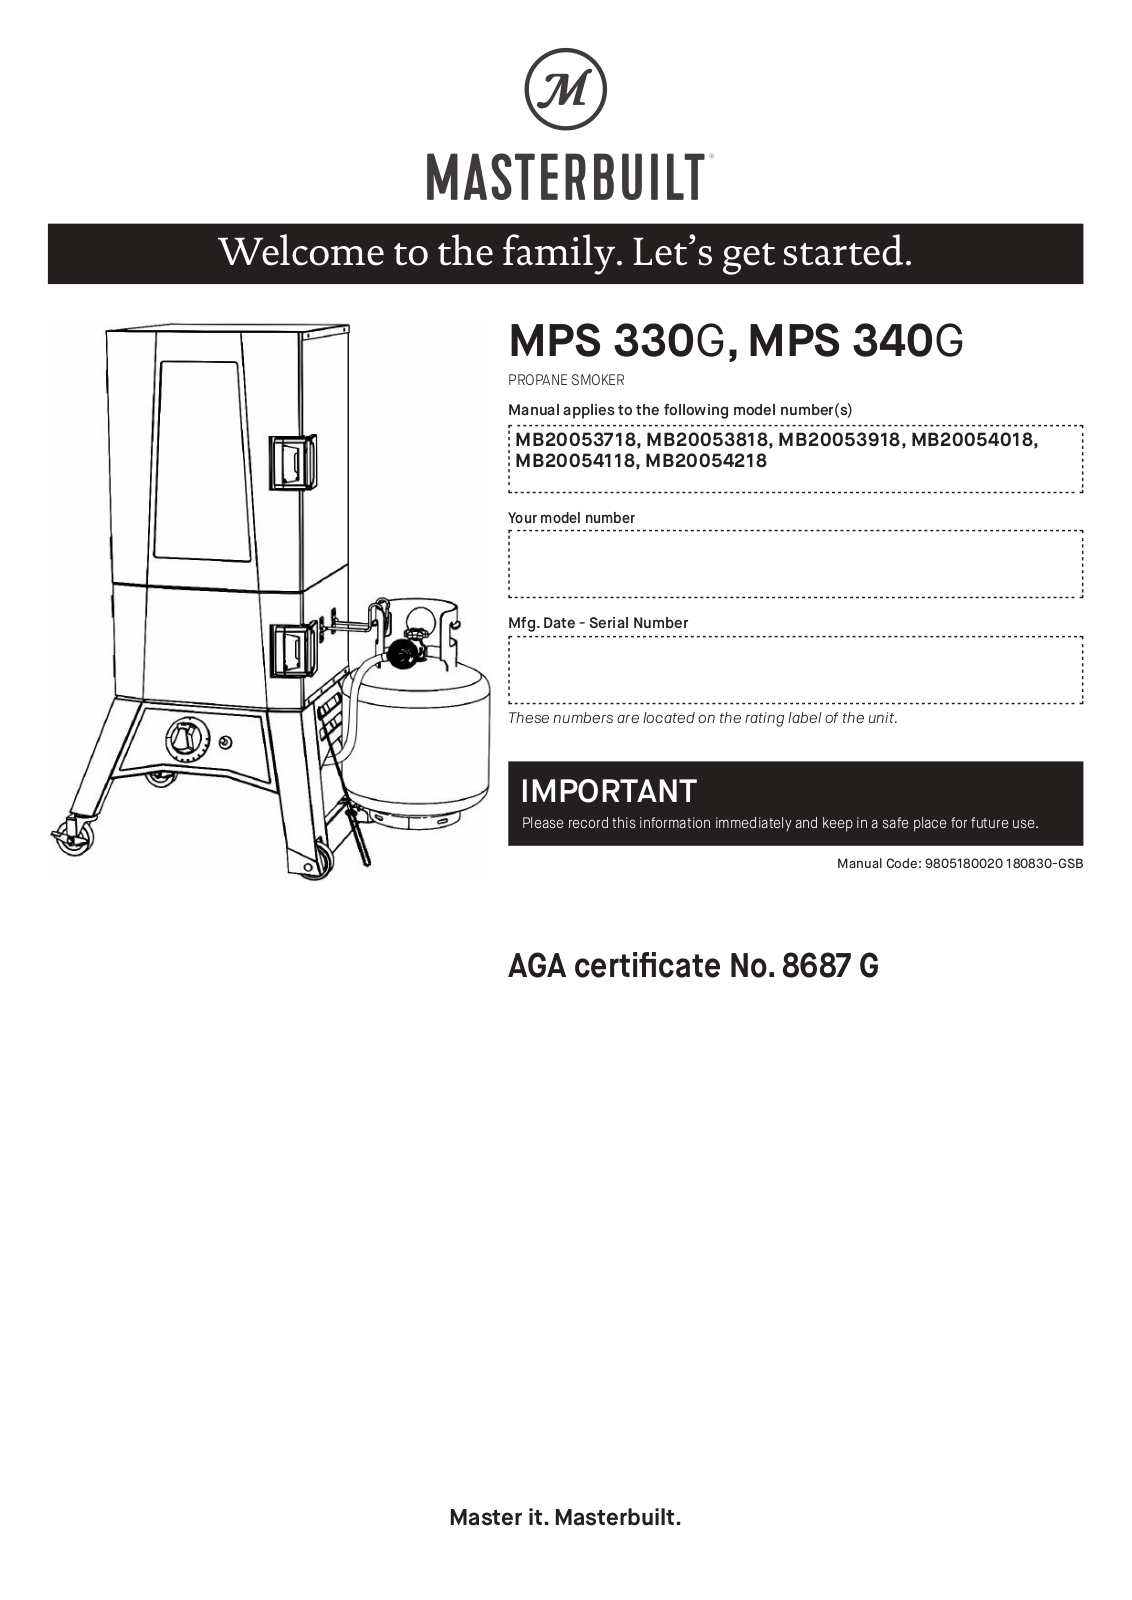 Masterbuilt MPS 330G, MPS 340G, MB20054018, MB20053718, MB20053818 User Manual